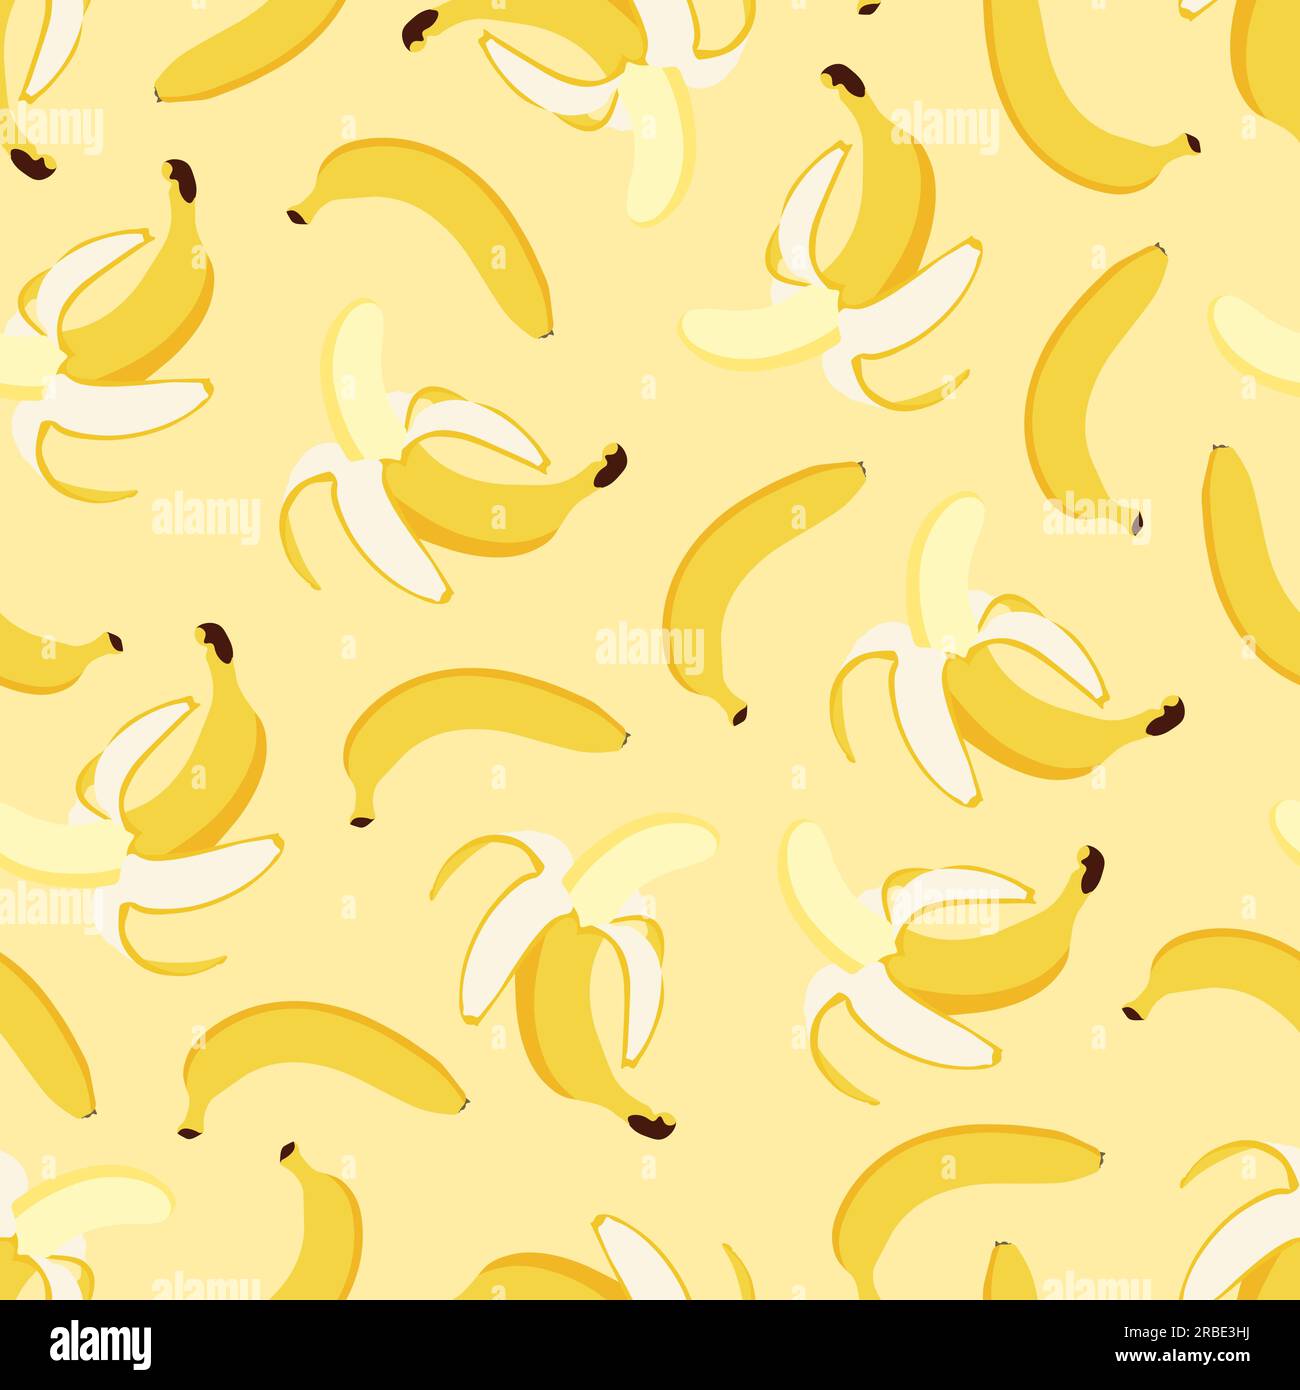 Motivo a banana senza cuciture - design disegnato a mano. Sfondo estivo alla moda - coperchio giallo brillante. Stampa di frutta vivace. Illustrazione vettoriale Illustrazione Vettoriale